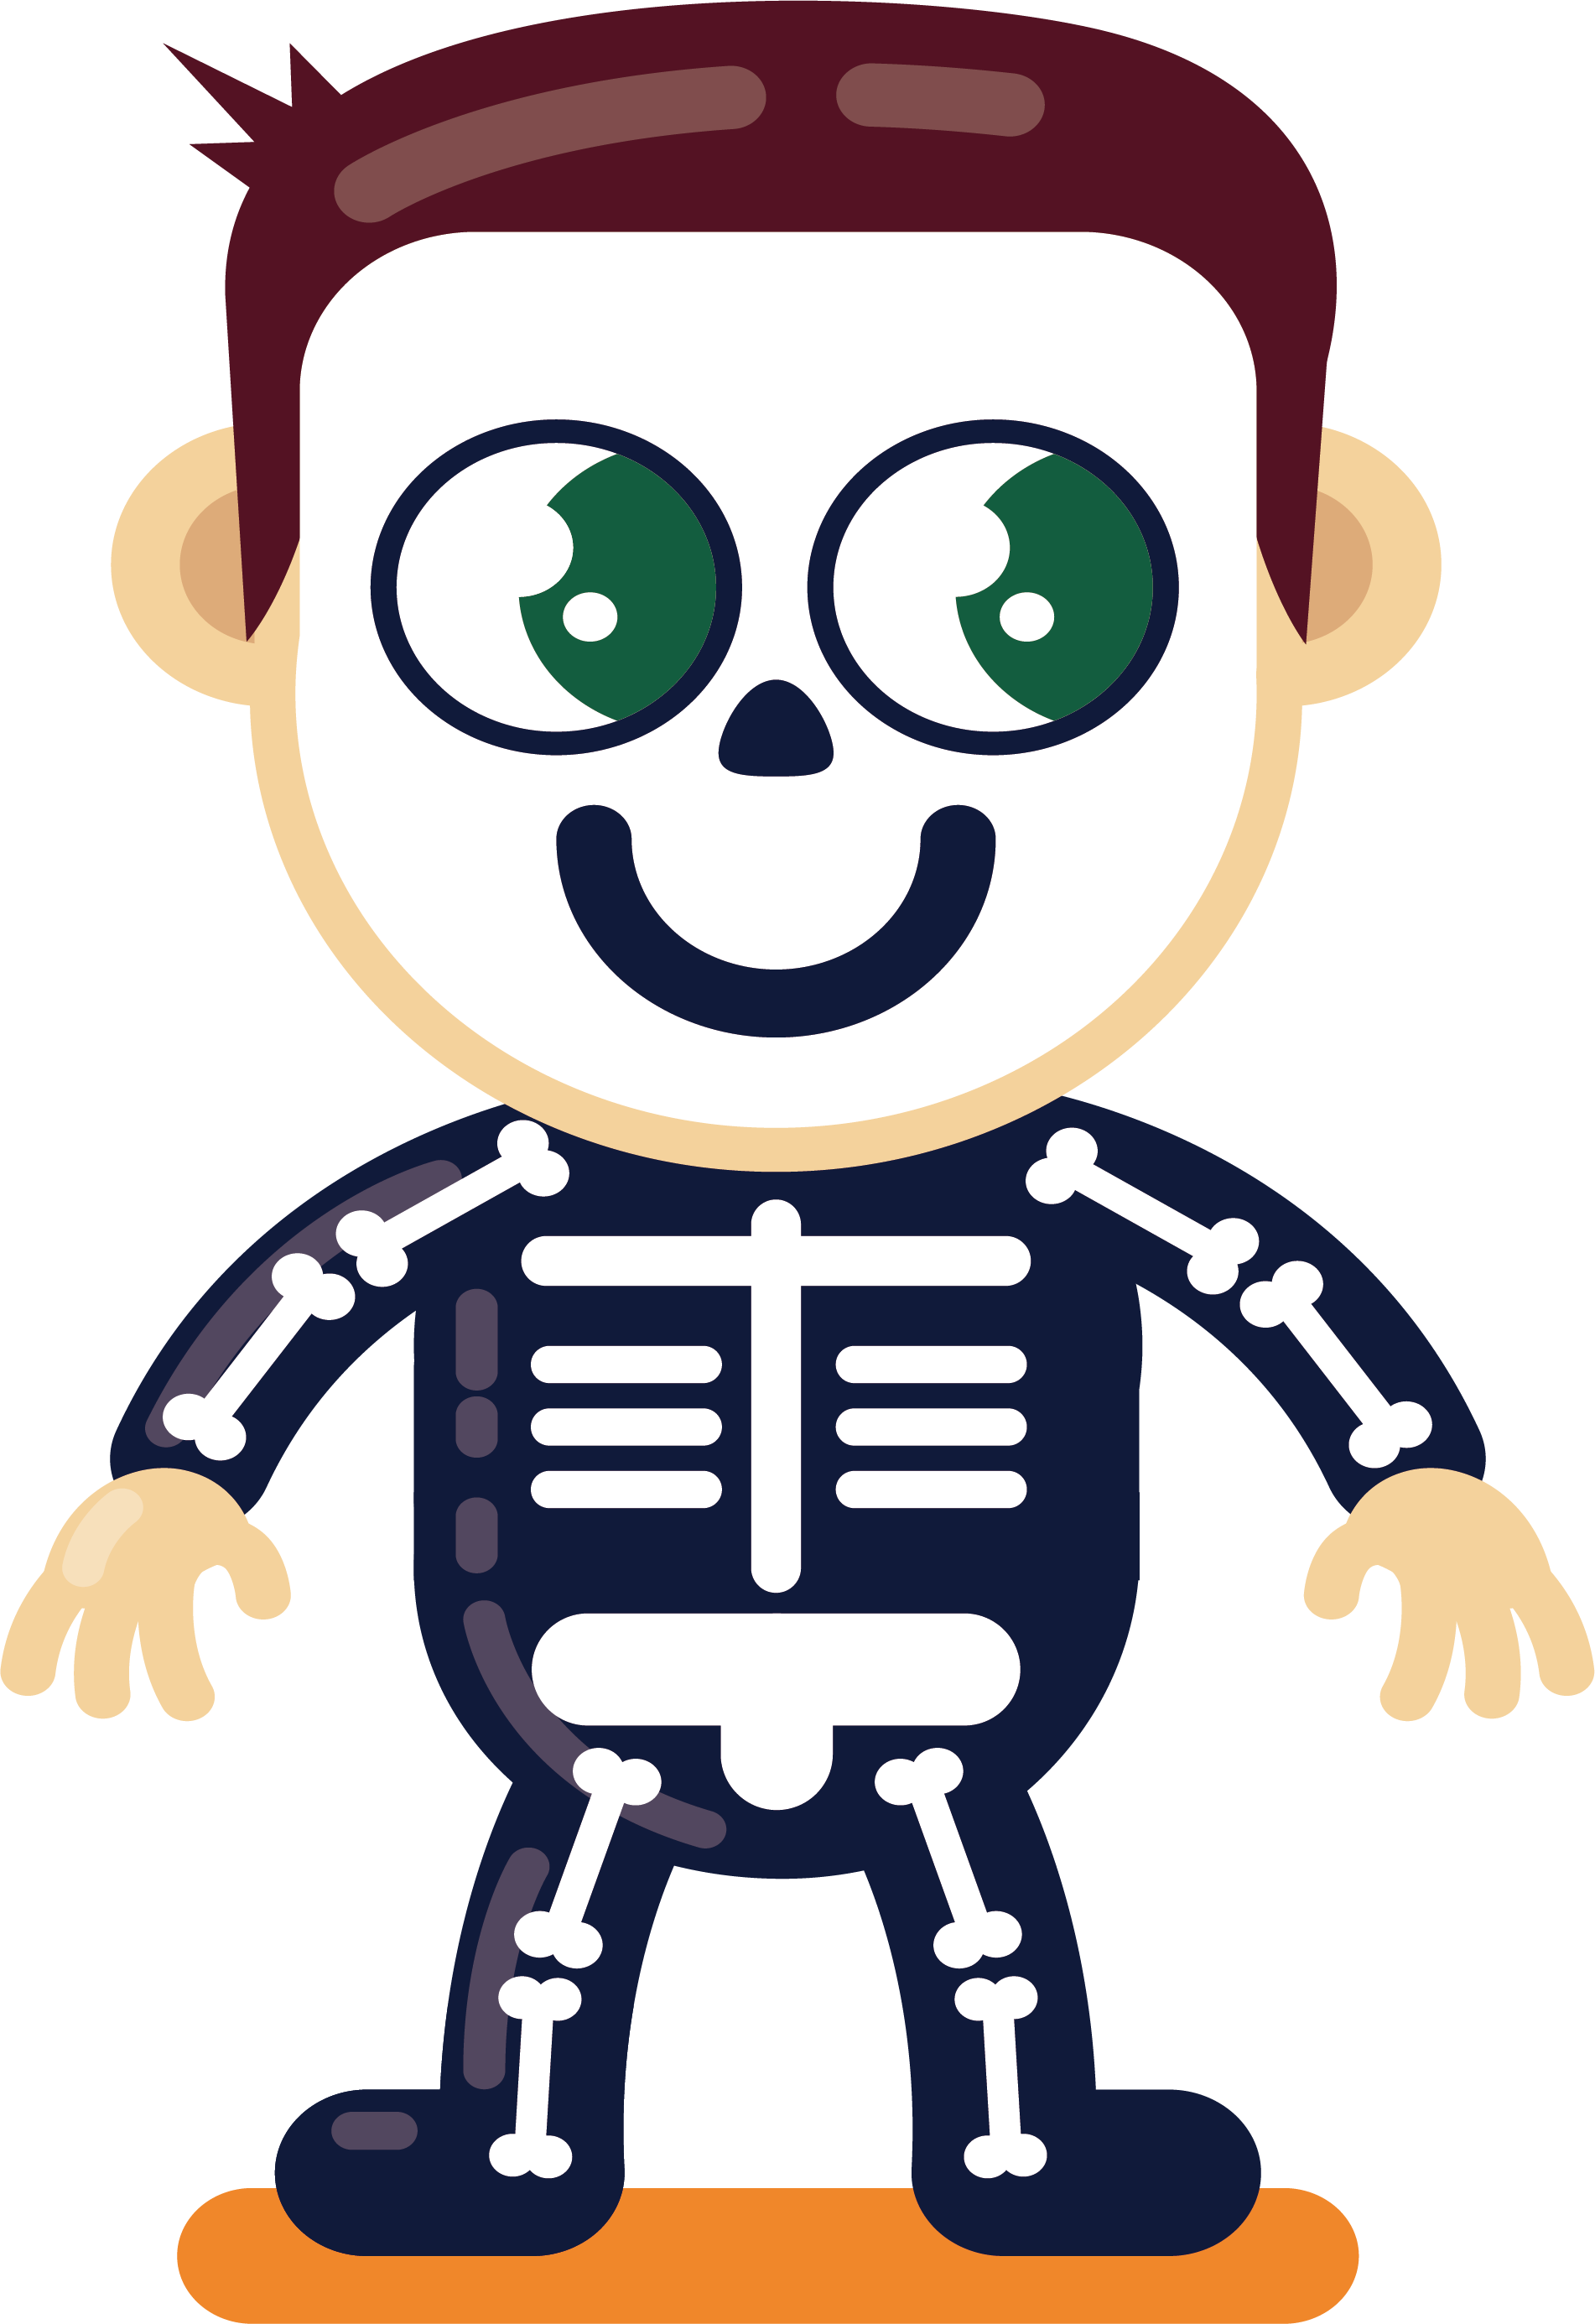 Skeleton skelaton